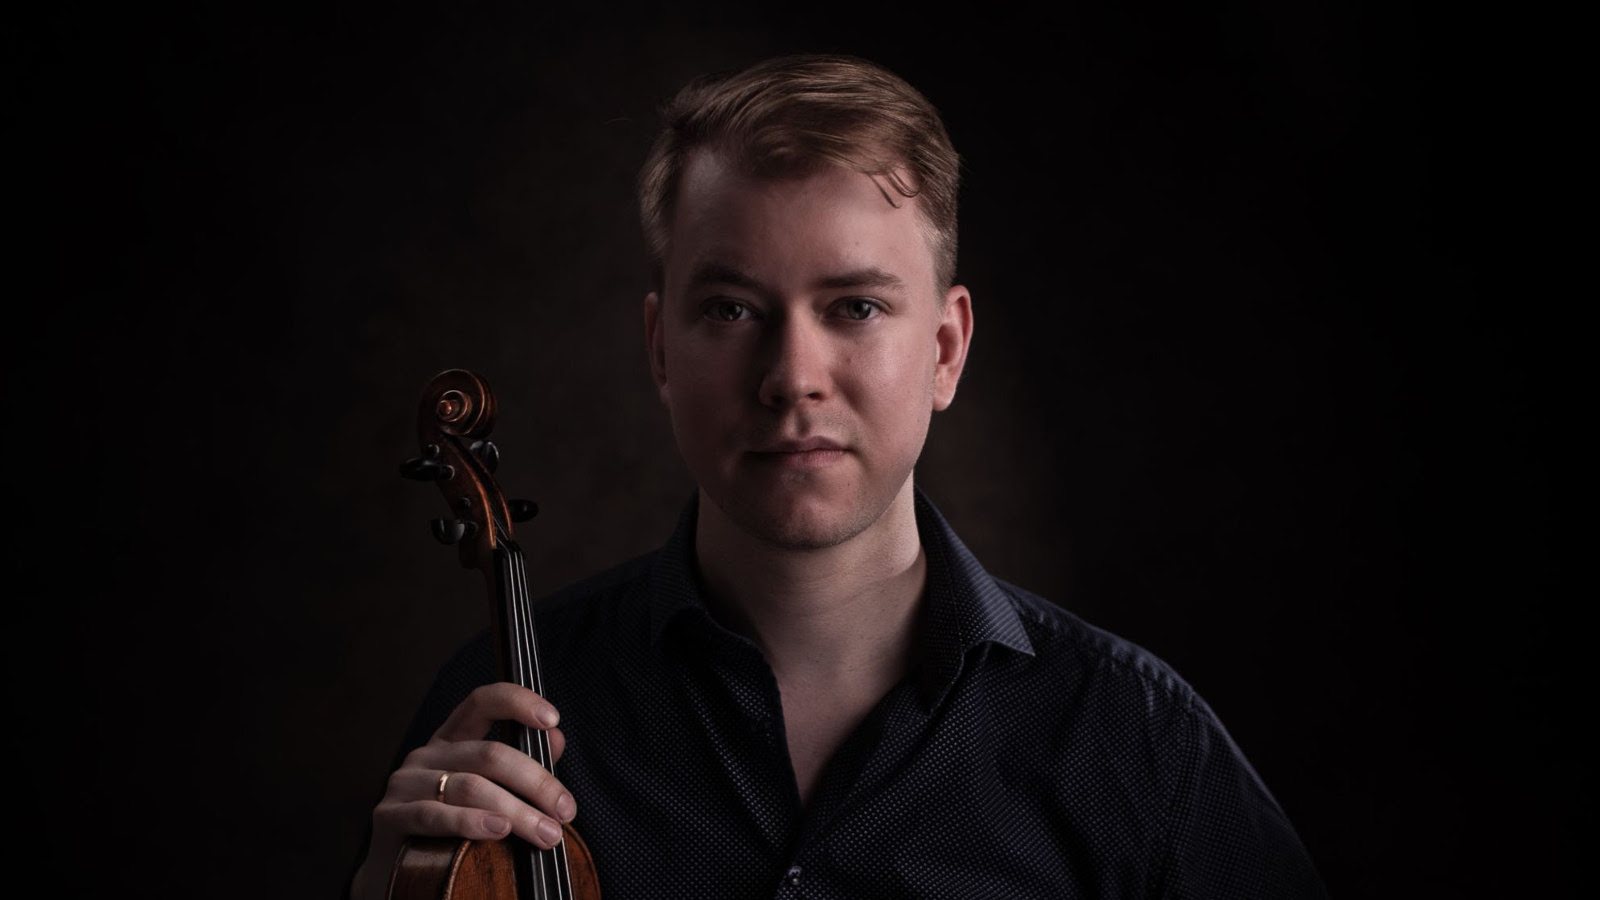 Kuvassa on Elias Lassfolk puolivartalokuvassa ja hänellä on viulu pystysuunnassa oikeassa kädessään.  Kuvan sävy on tumma.